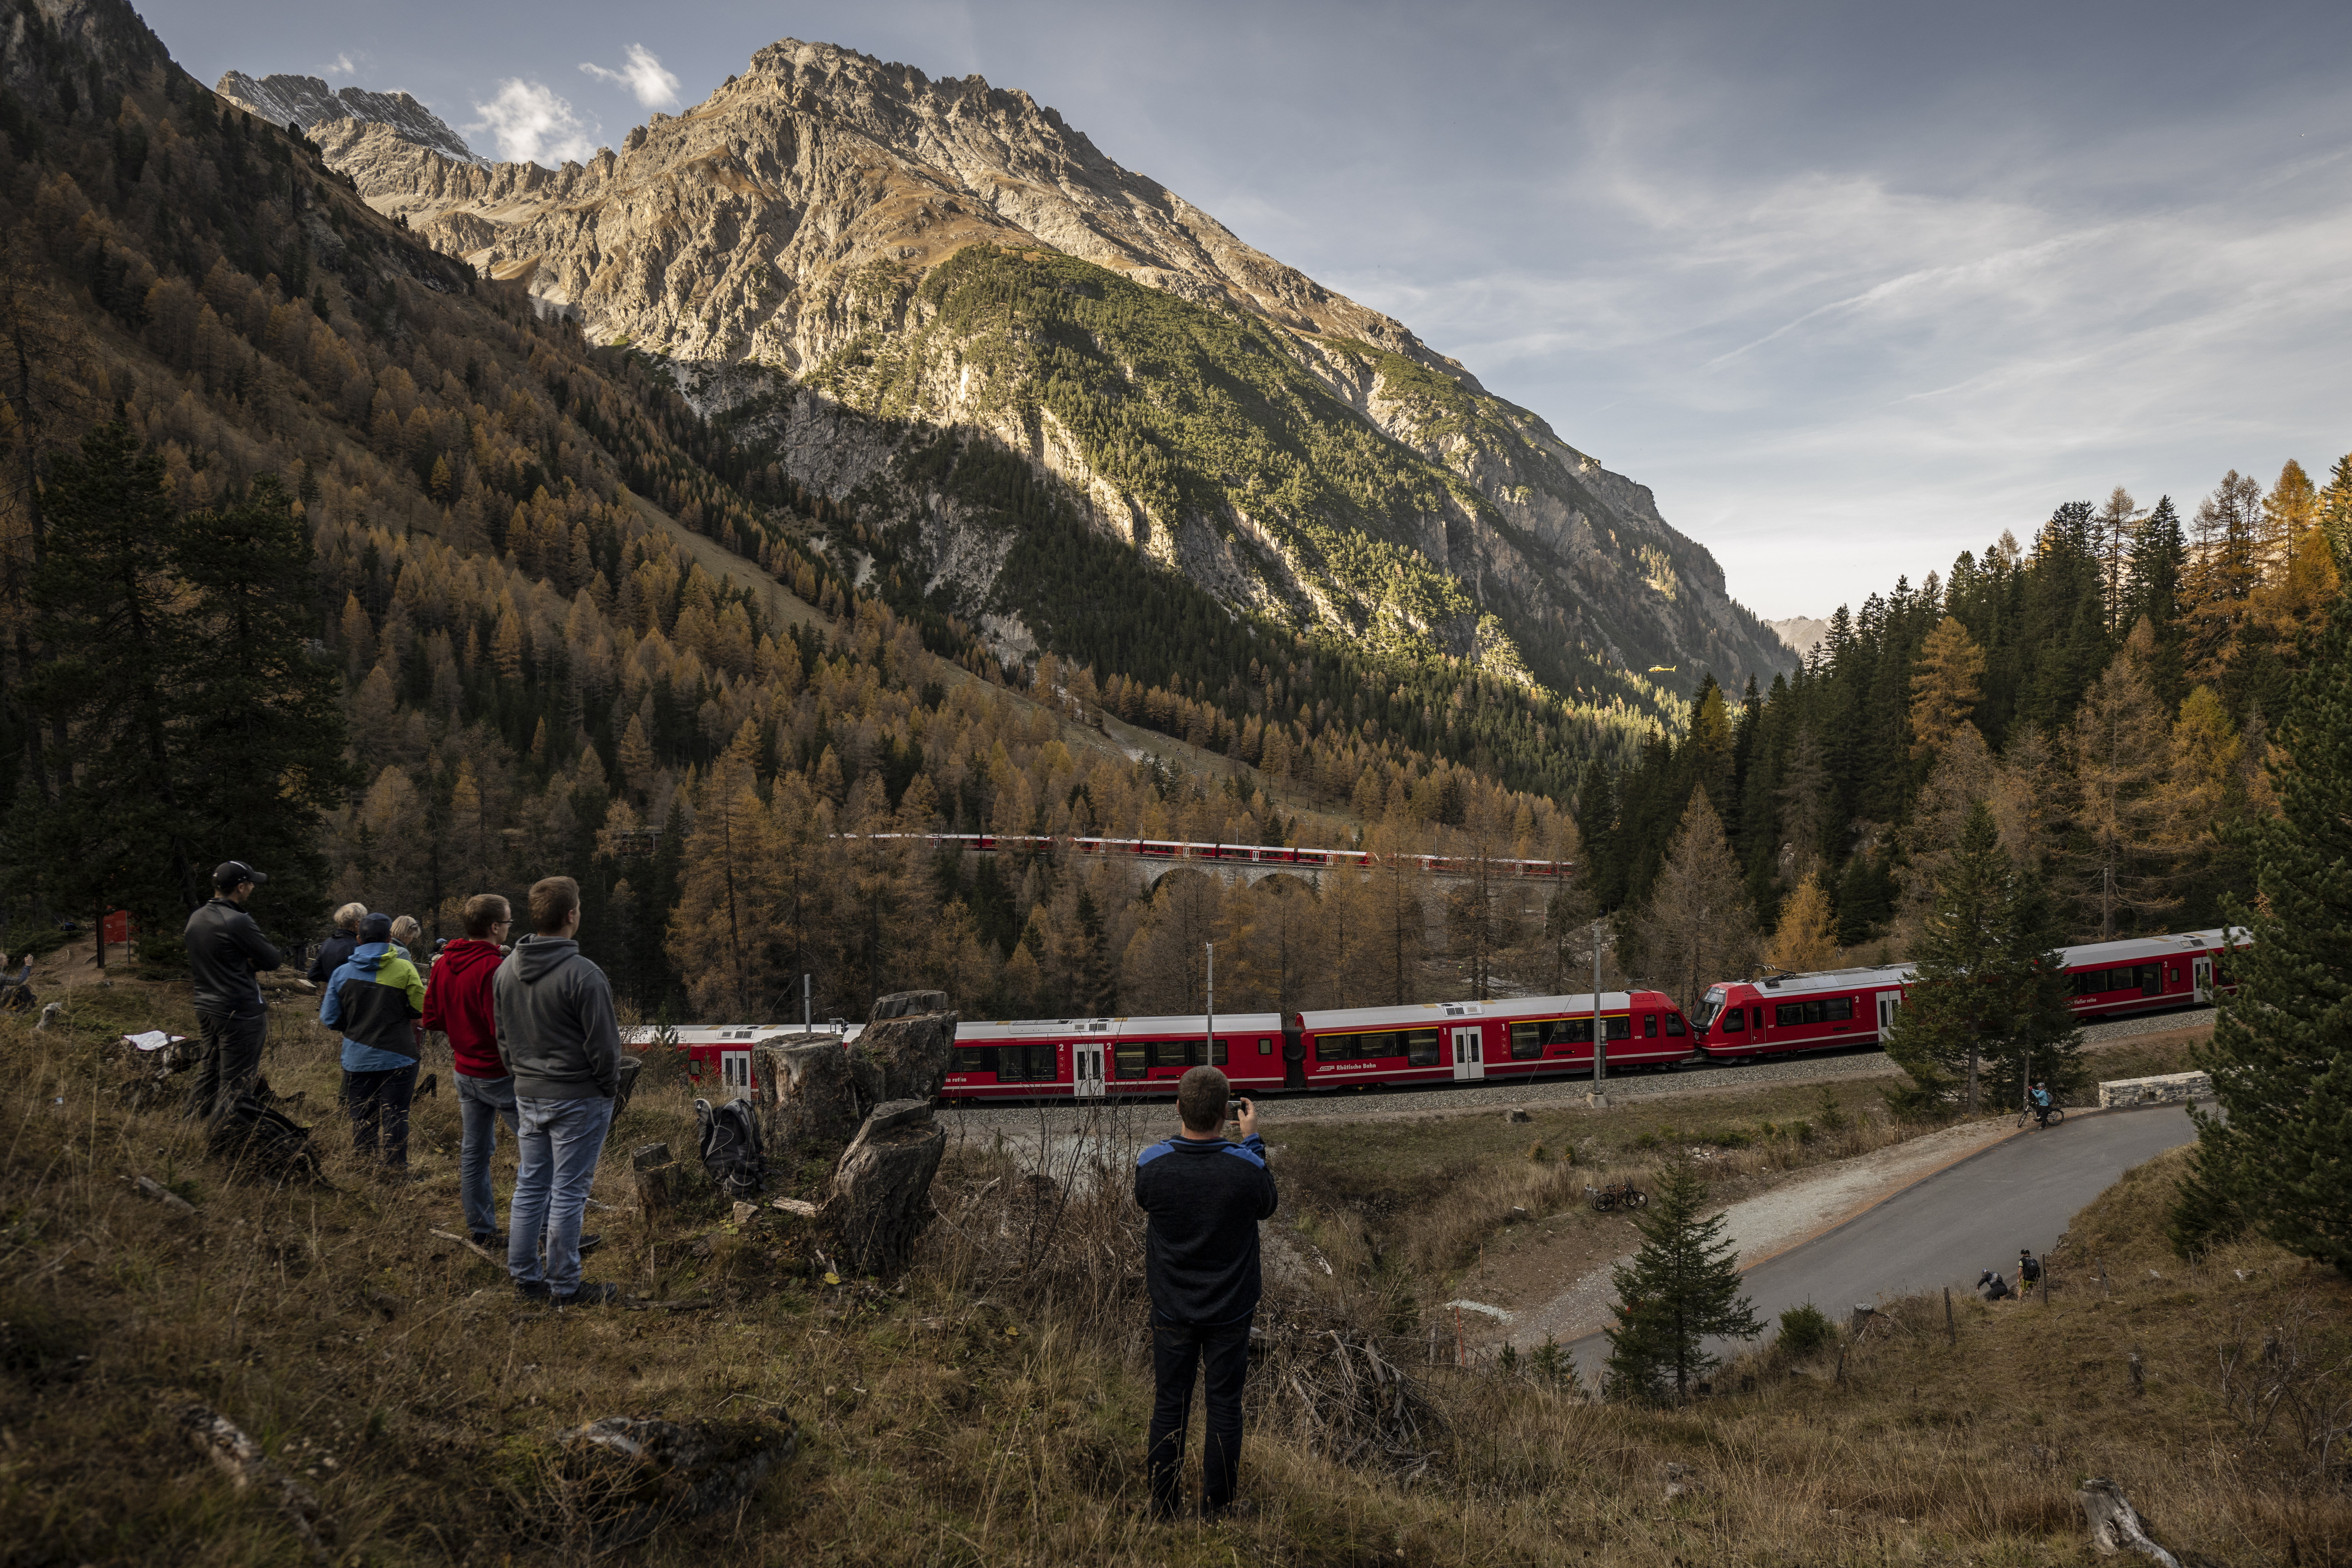 Megdőlt a harminc éves világrekord: két kilométeres vonatszörny zakatolt át  Svájcon - fotók! - Blikk